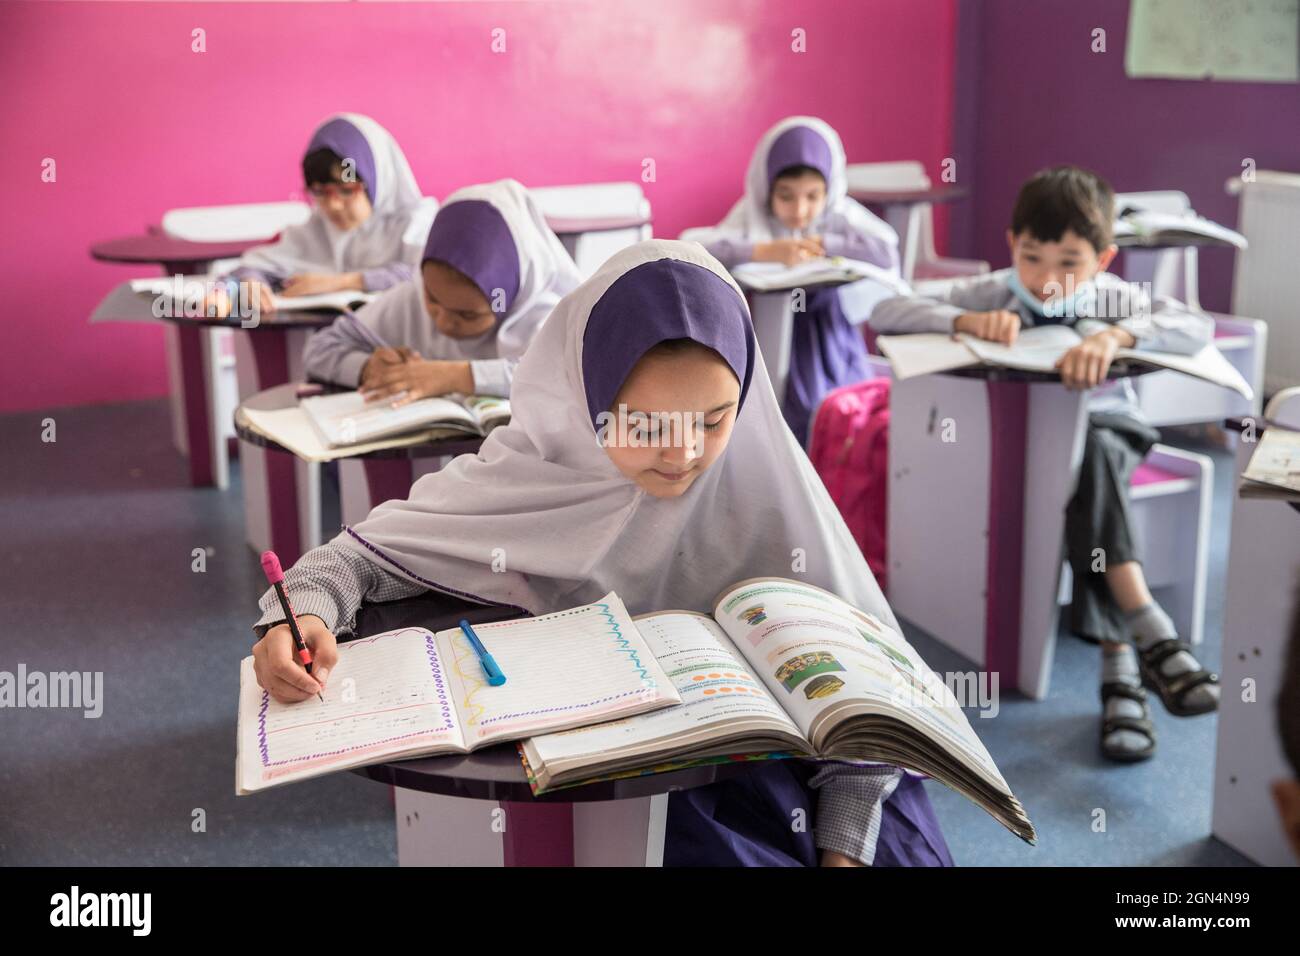 Usage Editorial Seulement Les Filles Afghanes Frequentent La Classe Dans Une Ecole Primaire A Kaboul En Afghanistan Le 22 Septembre 21 Classe Vide Au Niveau Secondaire Pour Les Filles Depuis La